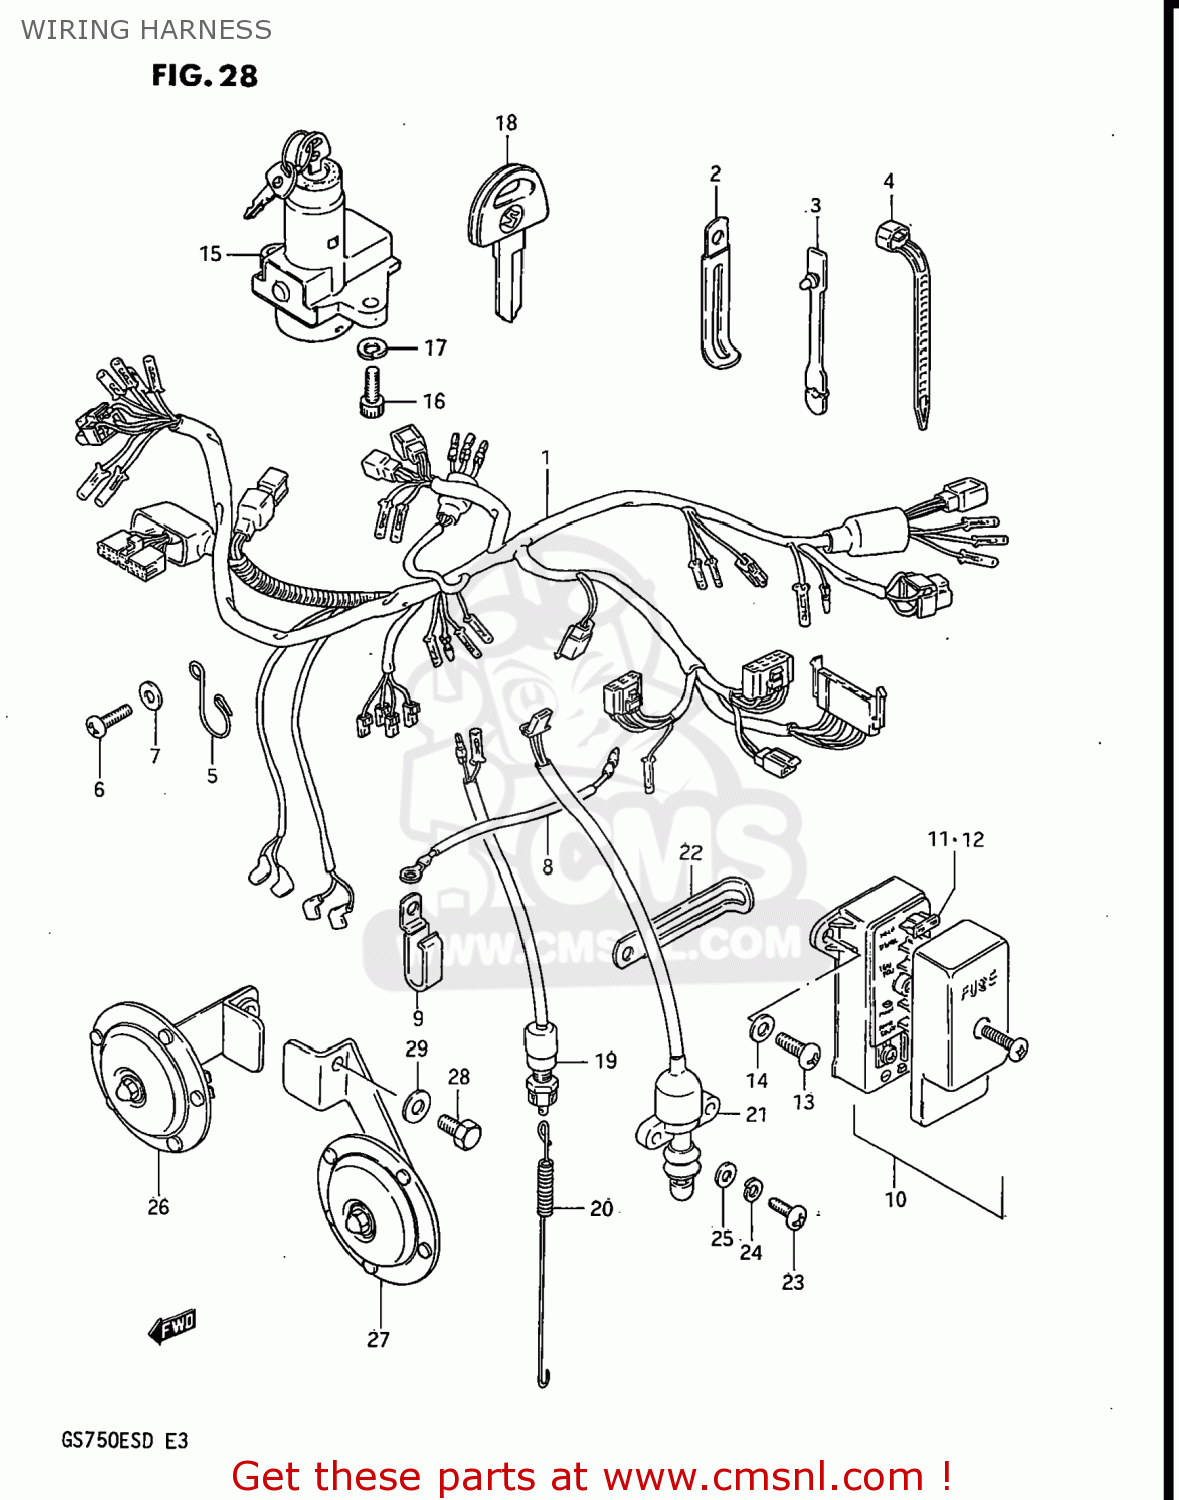 Ford Gp Wiring Schematic - Wiring Diagram